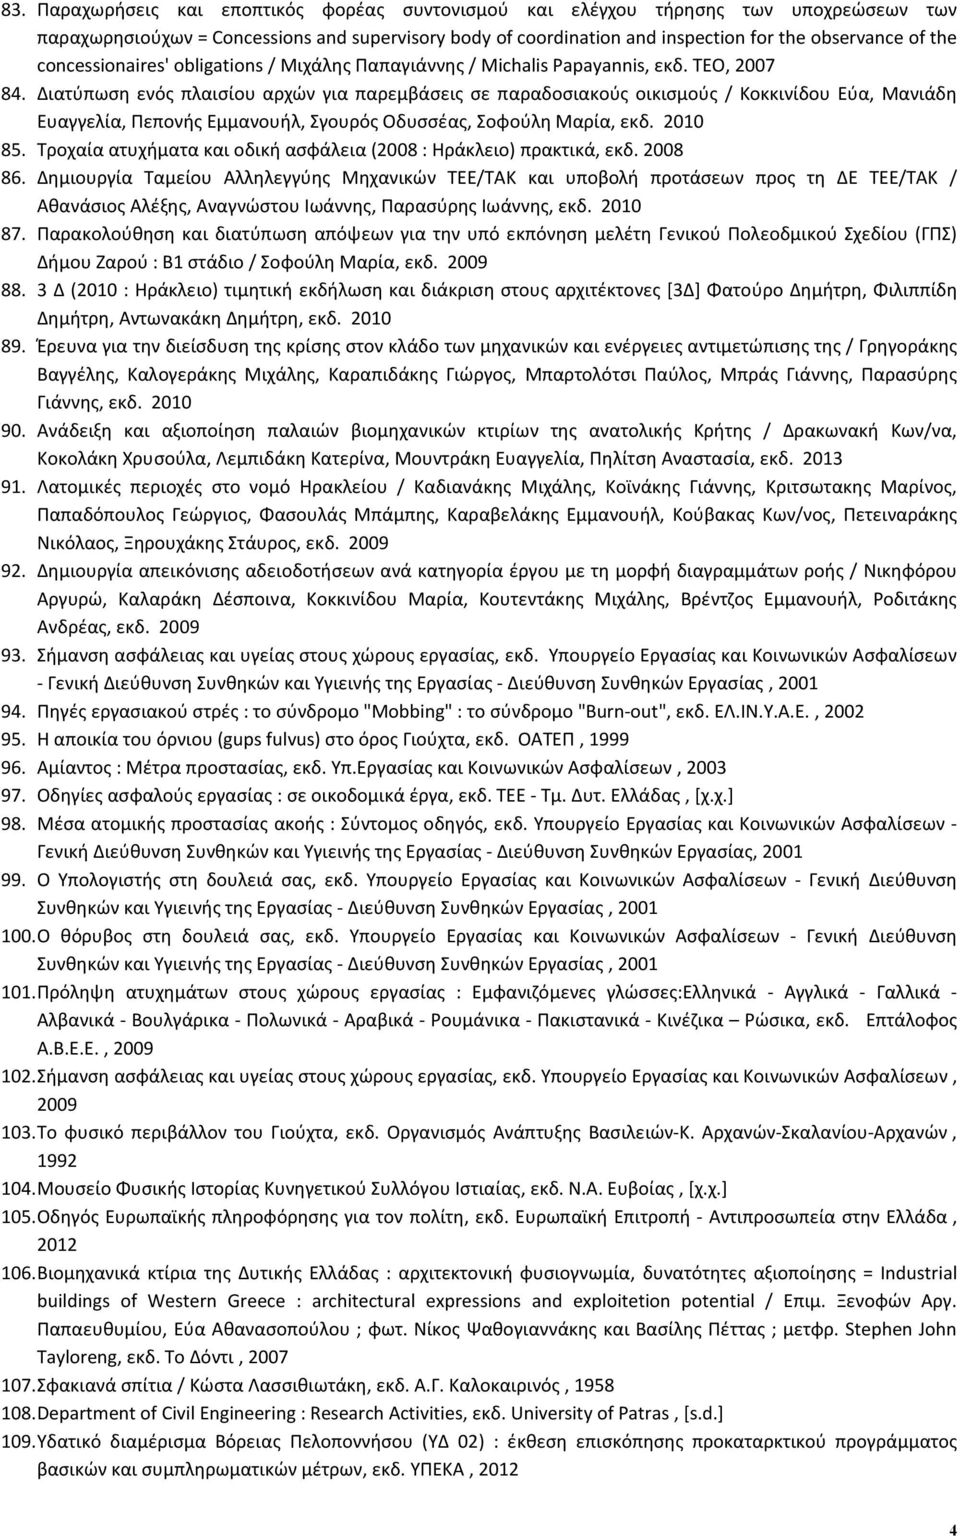 Διατύπωση ενός πλαισίου αρχών για παρεμβάσεις σε παραδοσιακούς οικισμούς / Κοκκινίδου Εύα, Μανιάδη Ευαγγελία, Πεπονής Εμμανουήλ, Σγουρός Οδυσσέας, Σοφούλη Μαρία, εκδ. 2010 85.